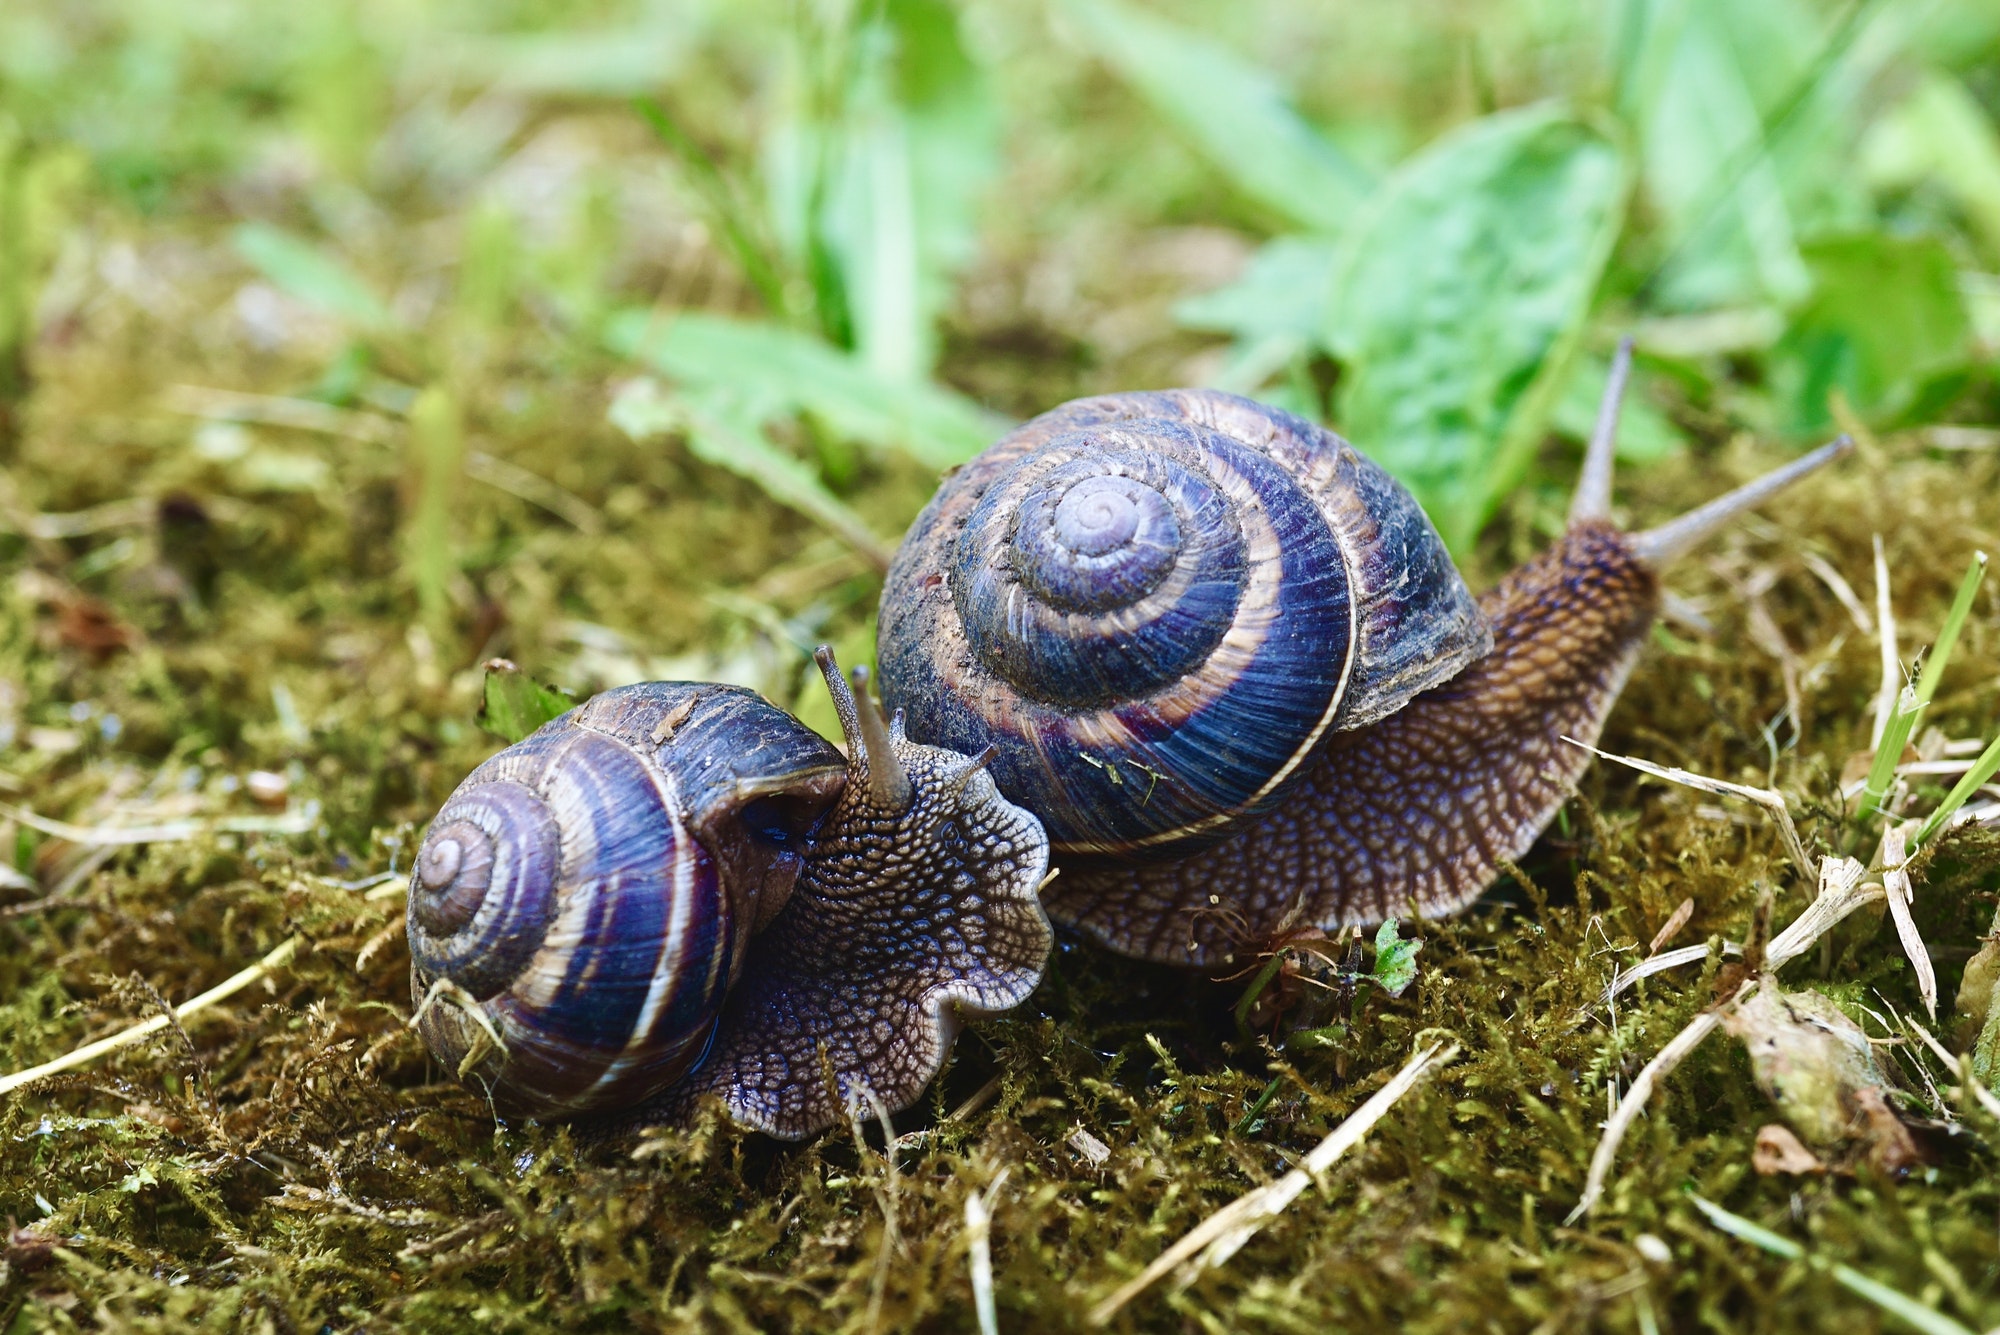 Garden snails